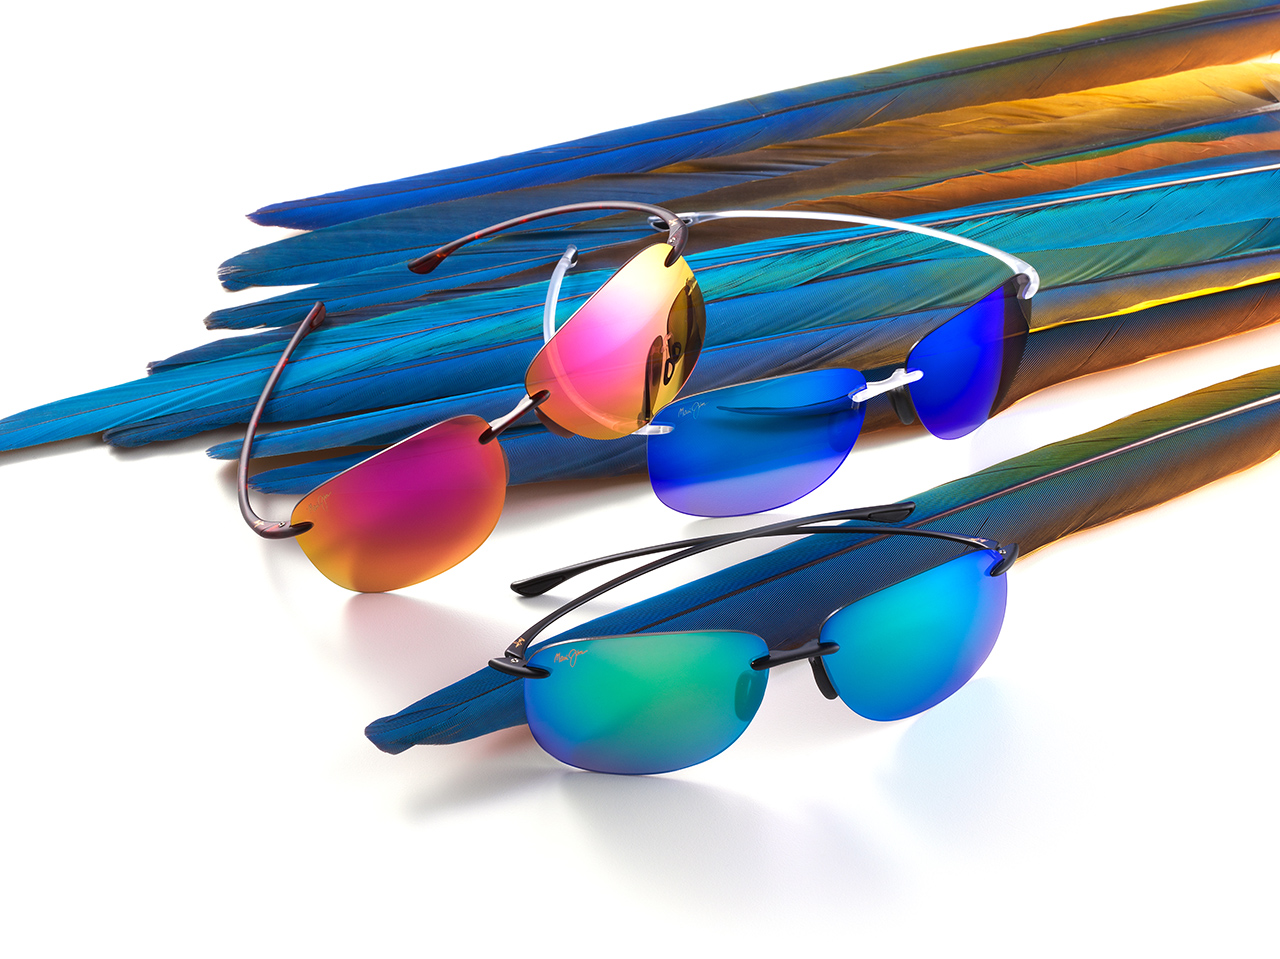 Three MauiPure LT Sunglasses Styles